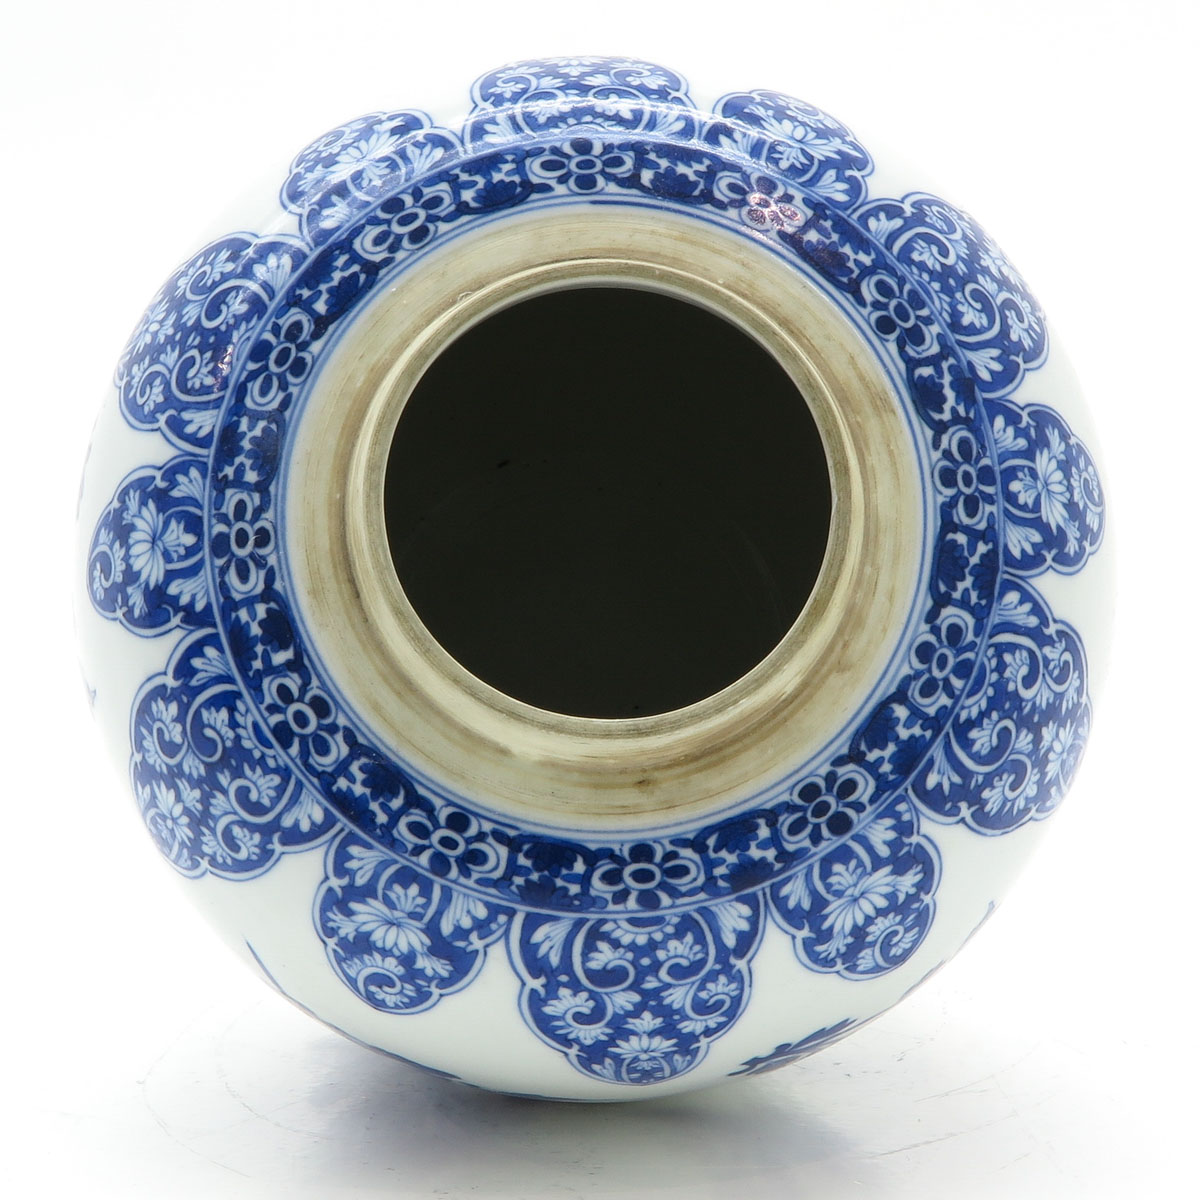 China Porcelain Ginger Jar - Image 5 of 6